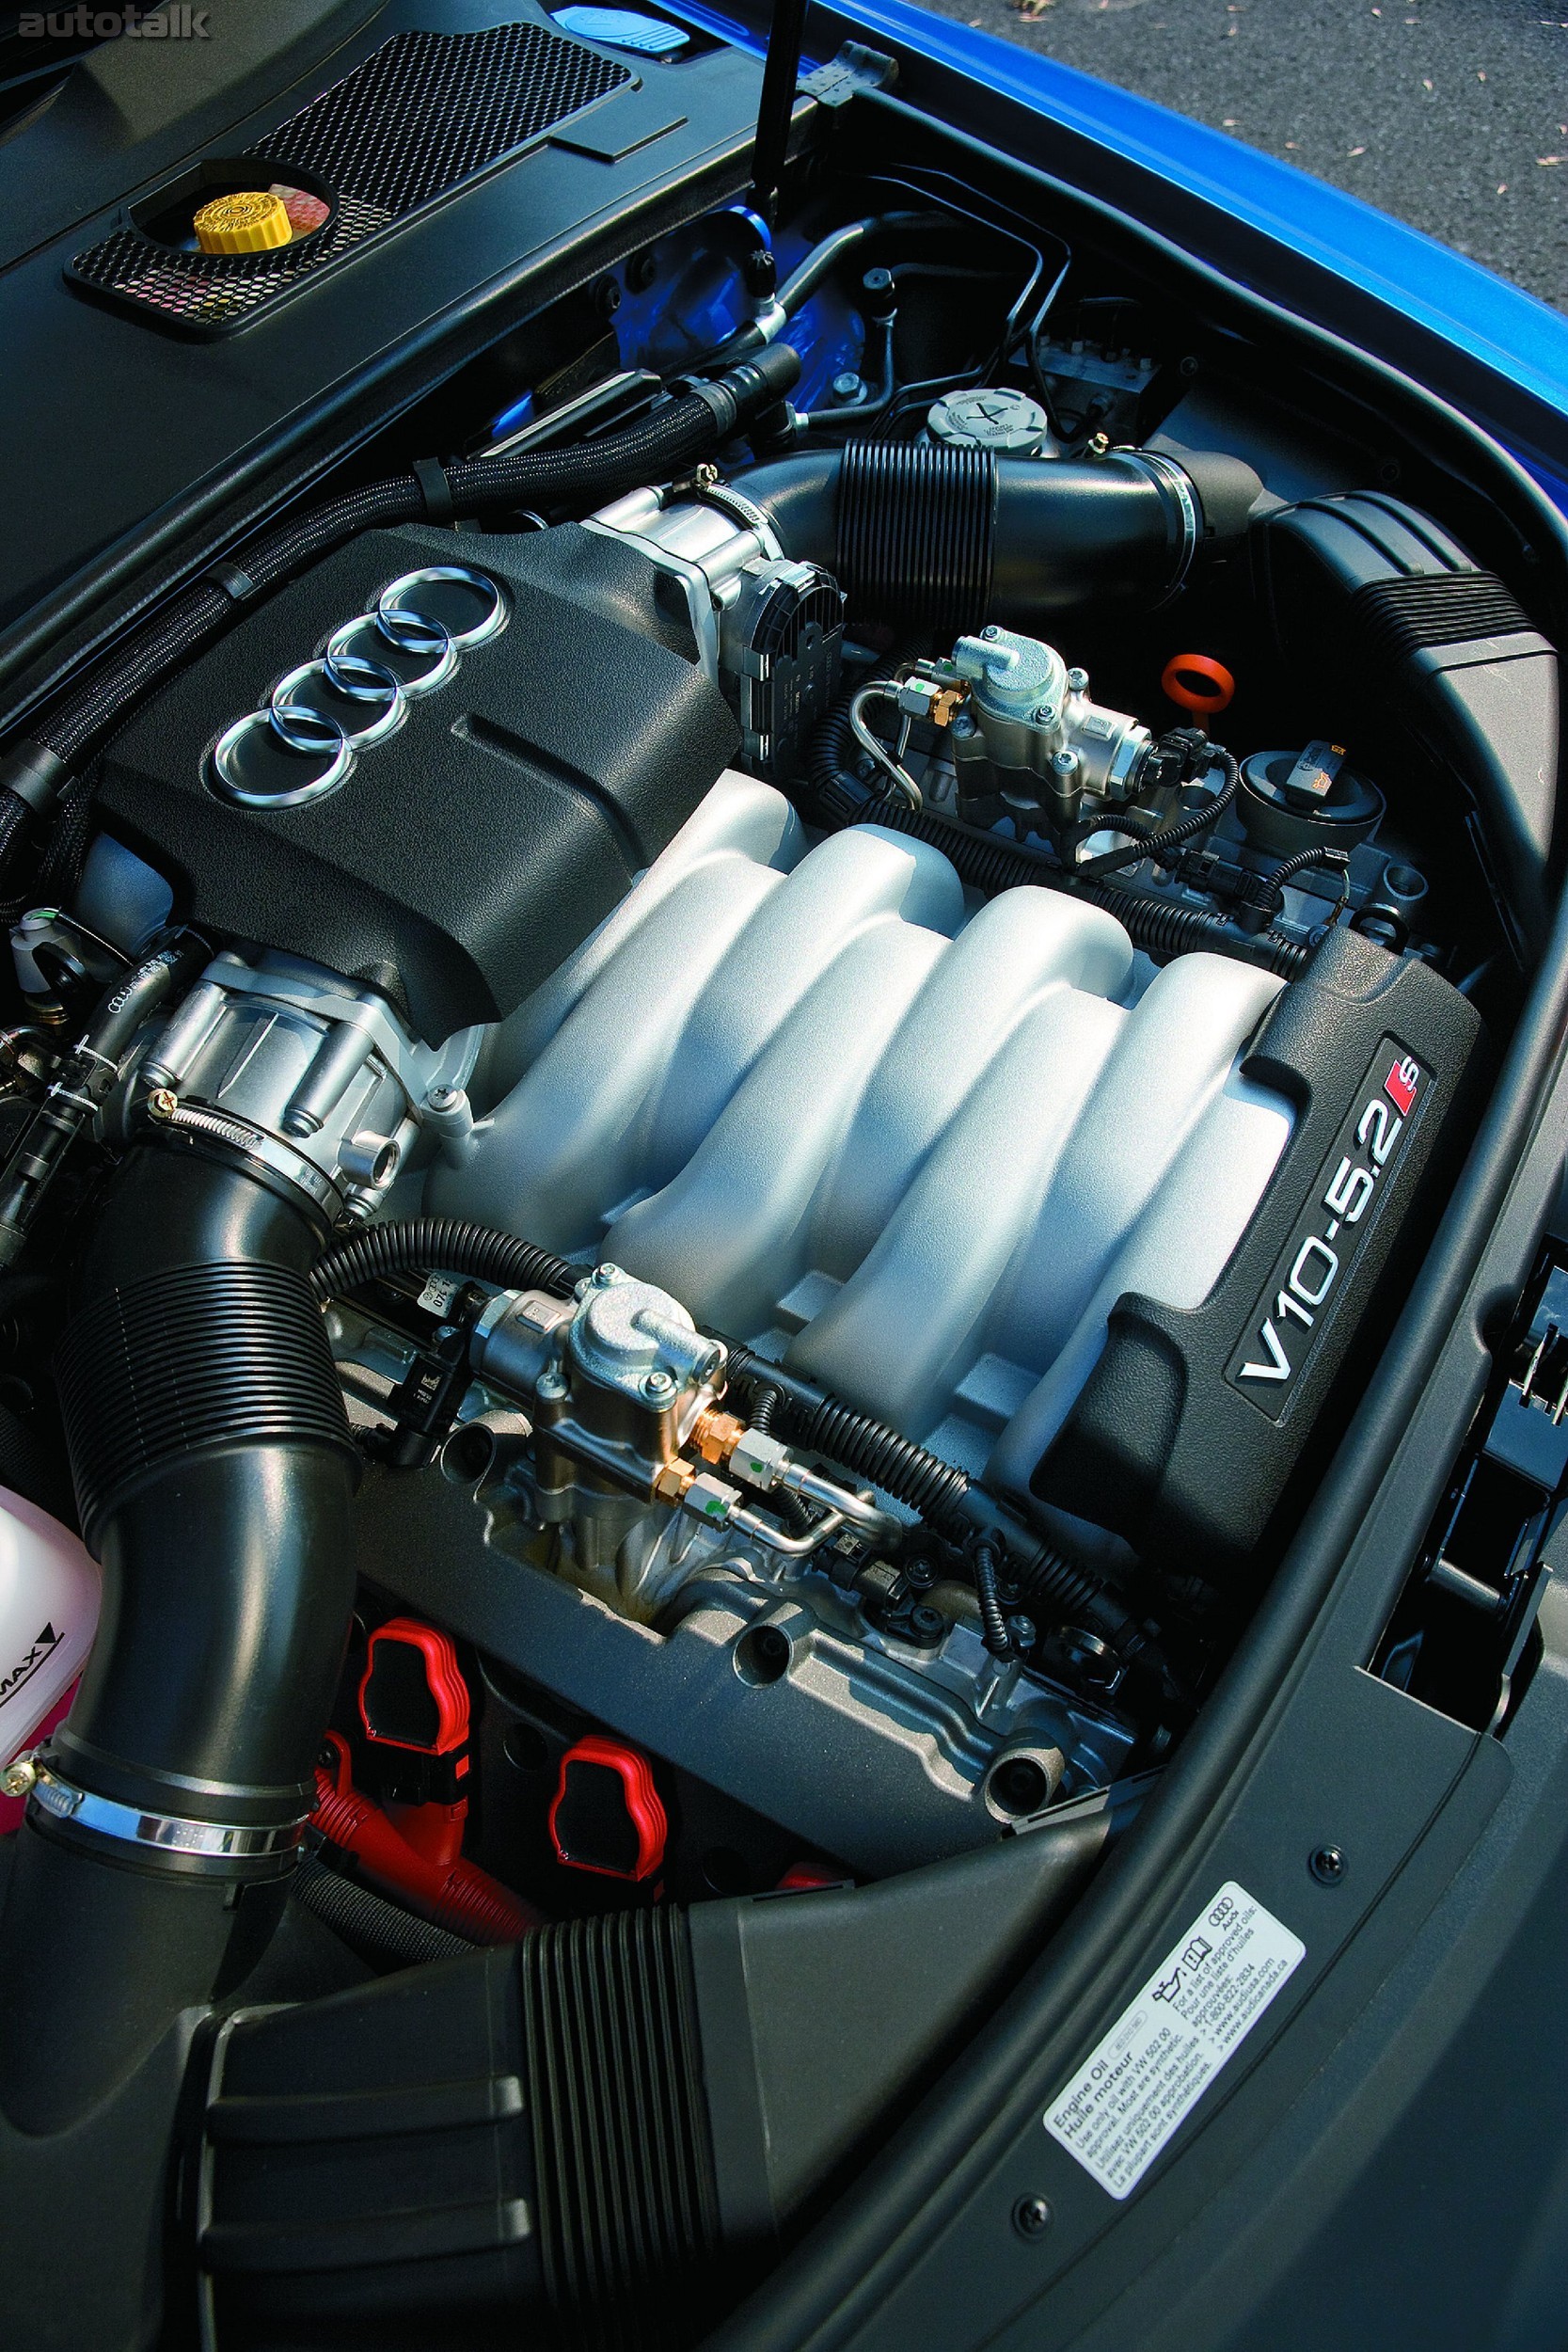 2008 Audi S6